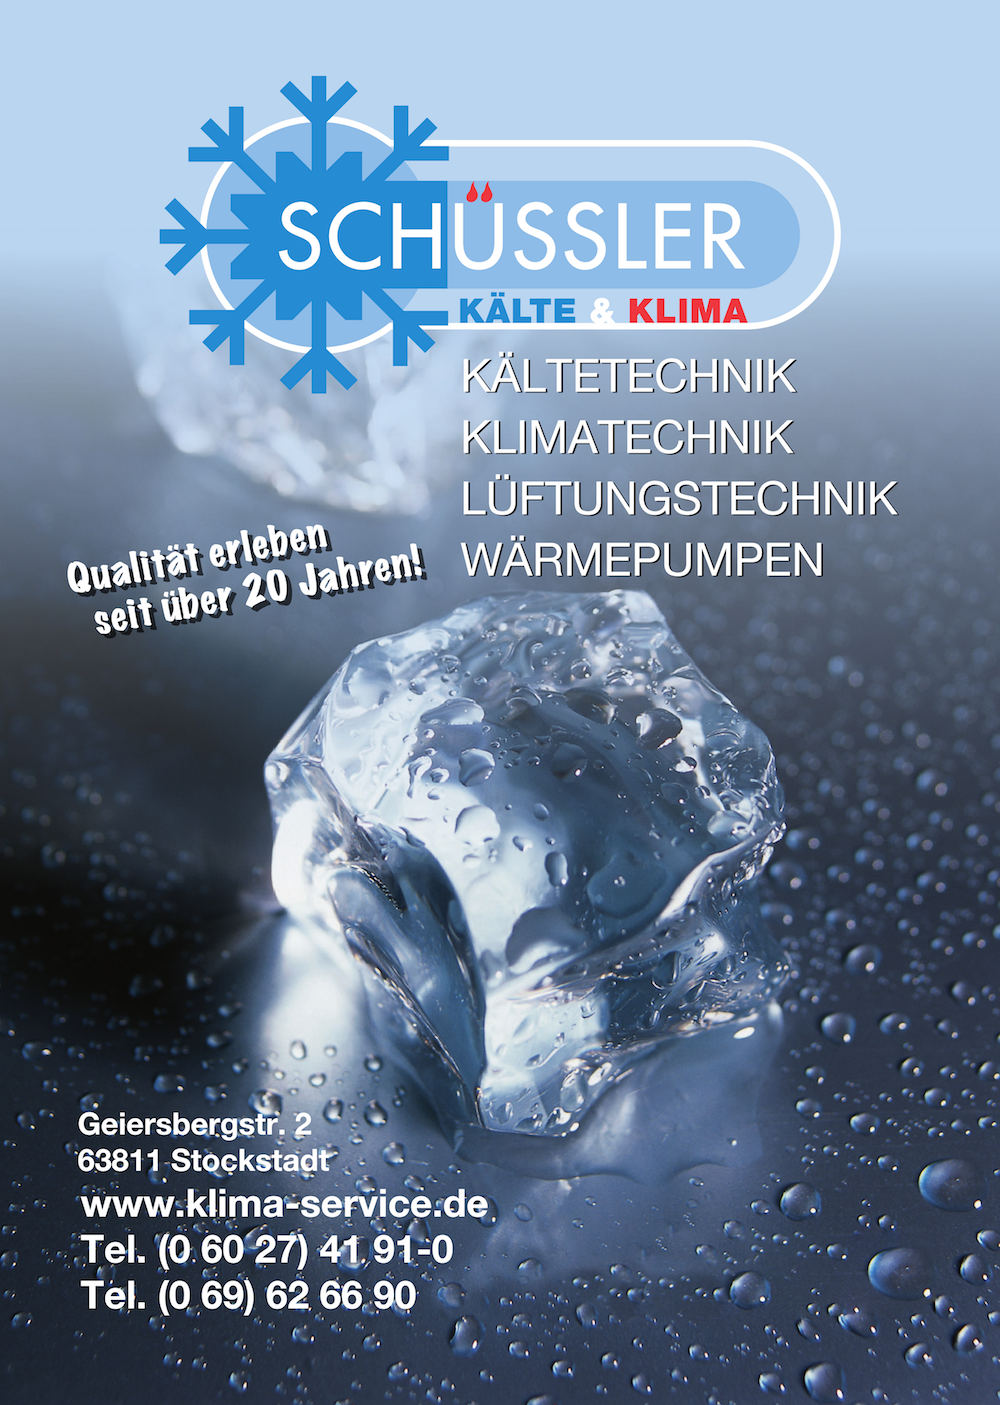 H. Schüssler Klima- Regel- und Anlagentechnik GmbH Foto